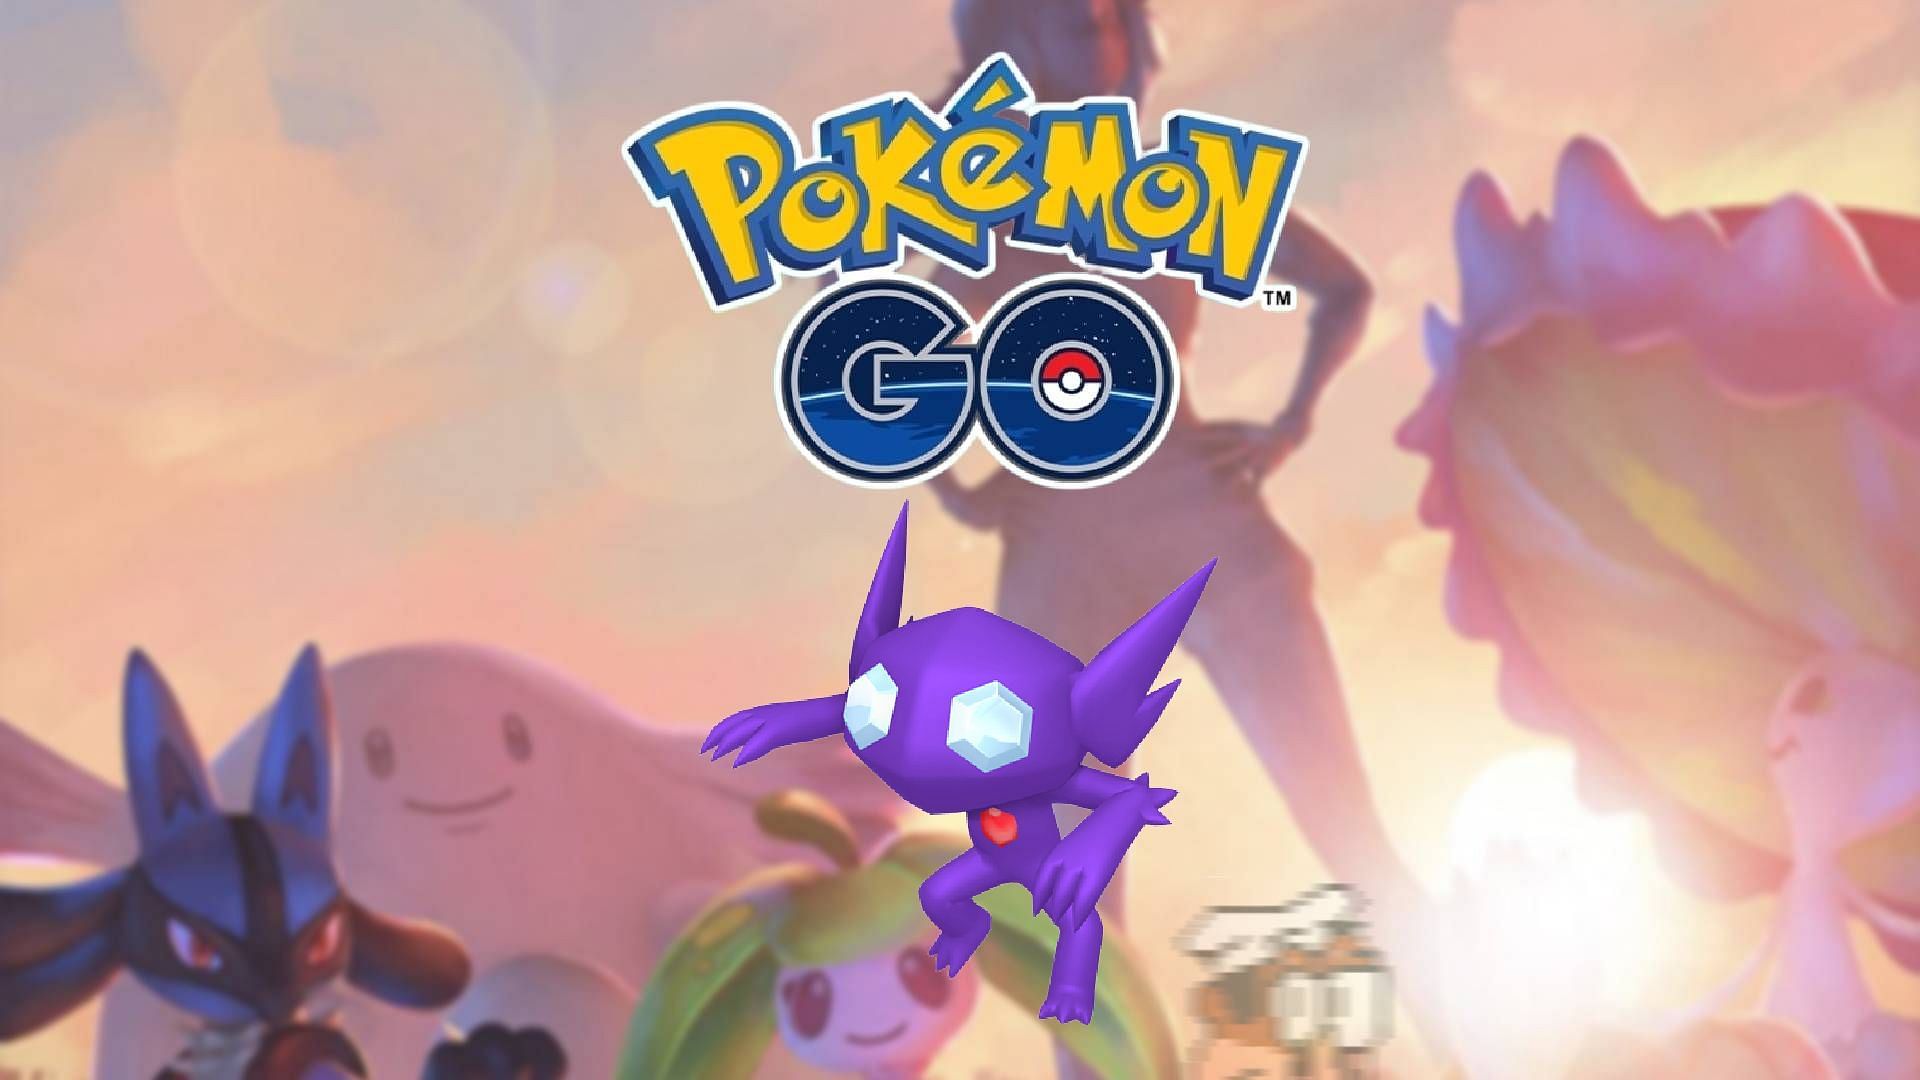 Como vencer Mega Sableye em Pokémon GO